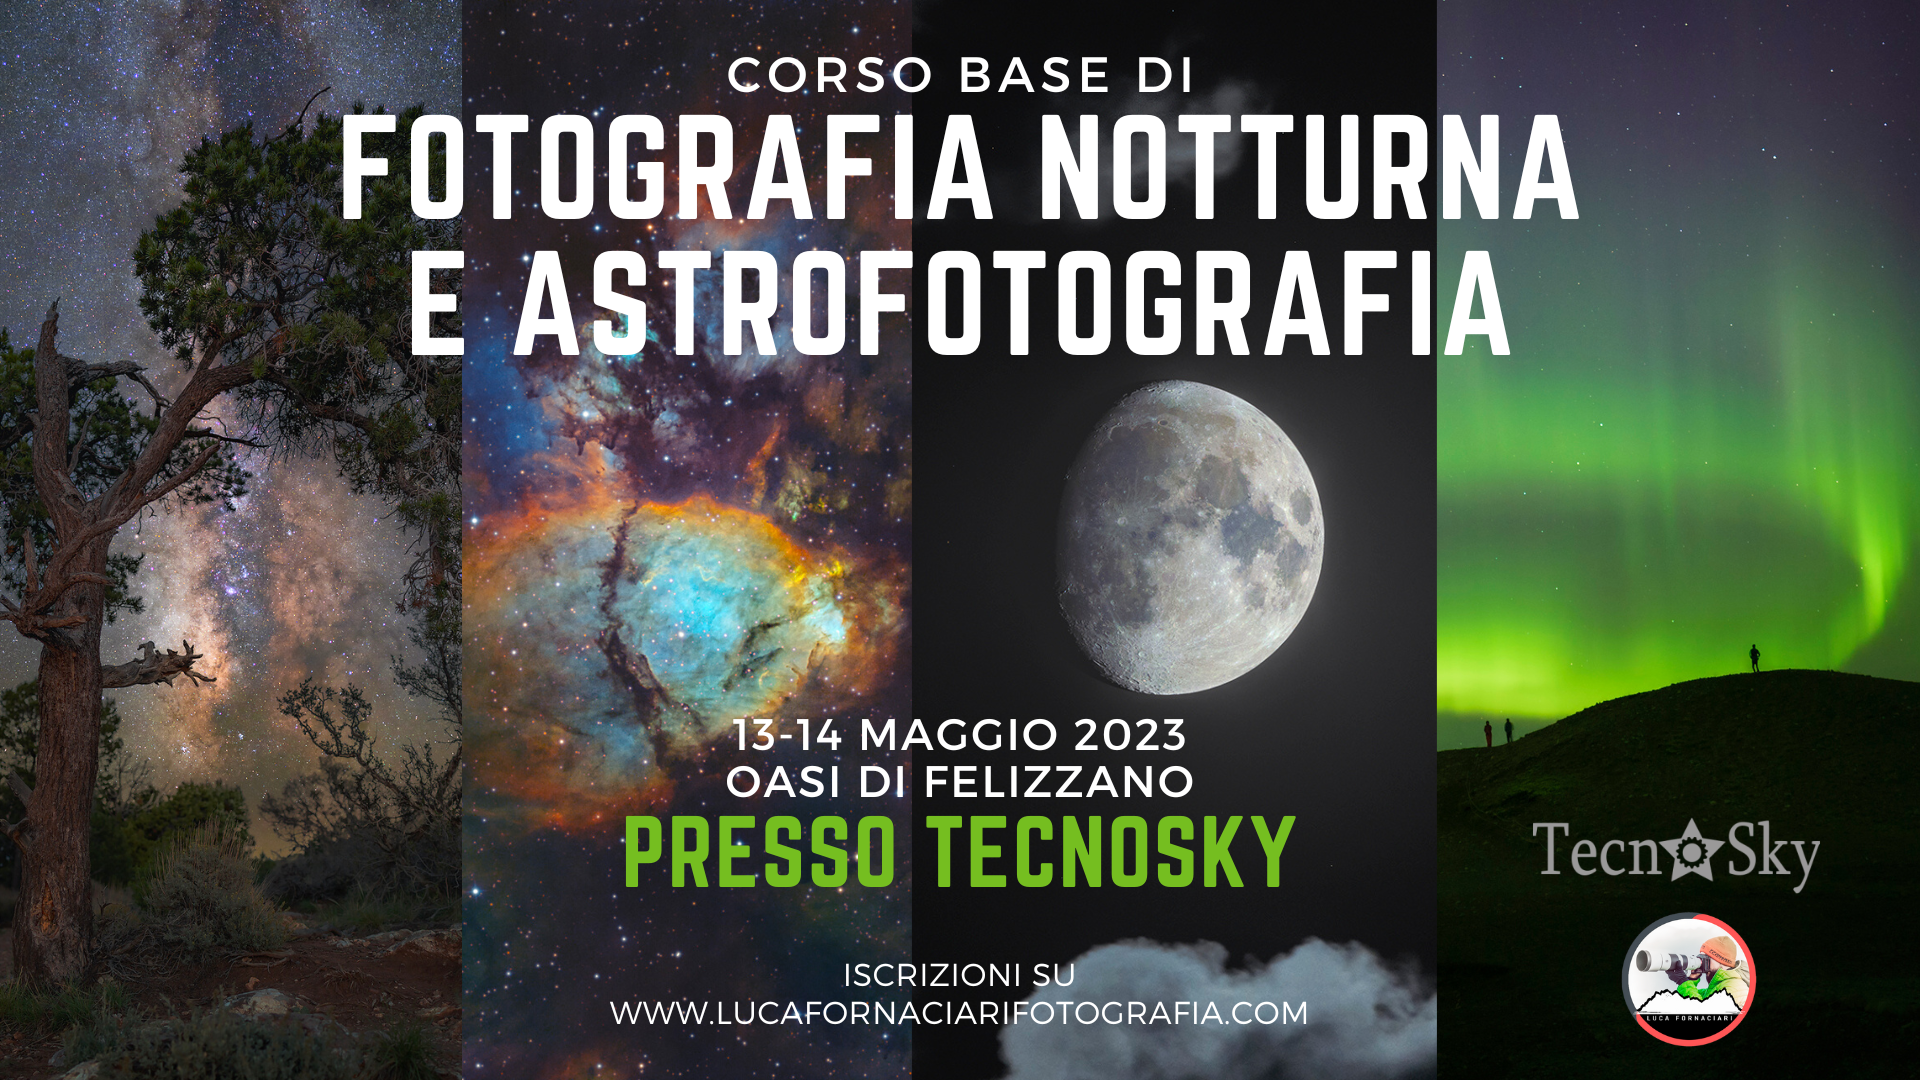 Corso di fotografia notturna e astrofotografia a Tecnosky fotografare la via lattea deep sky nebulose galassie telescopio camera astronomica tutorial lezioni